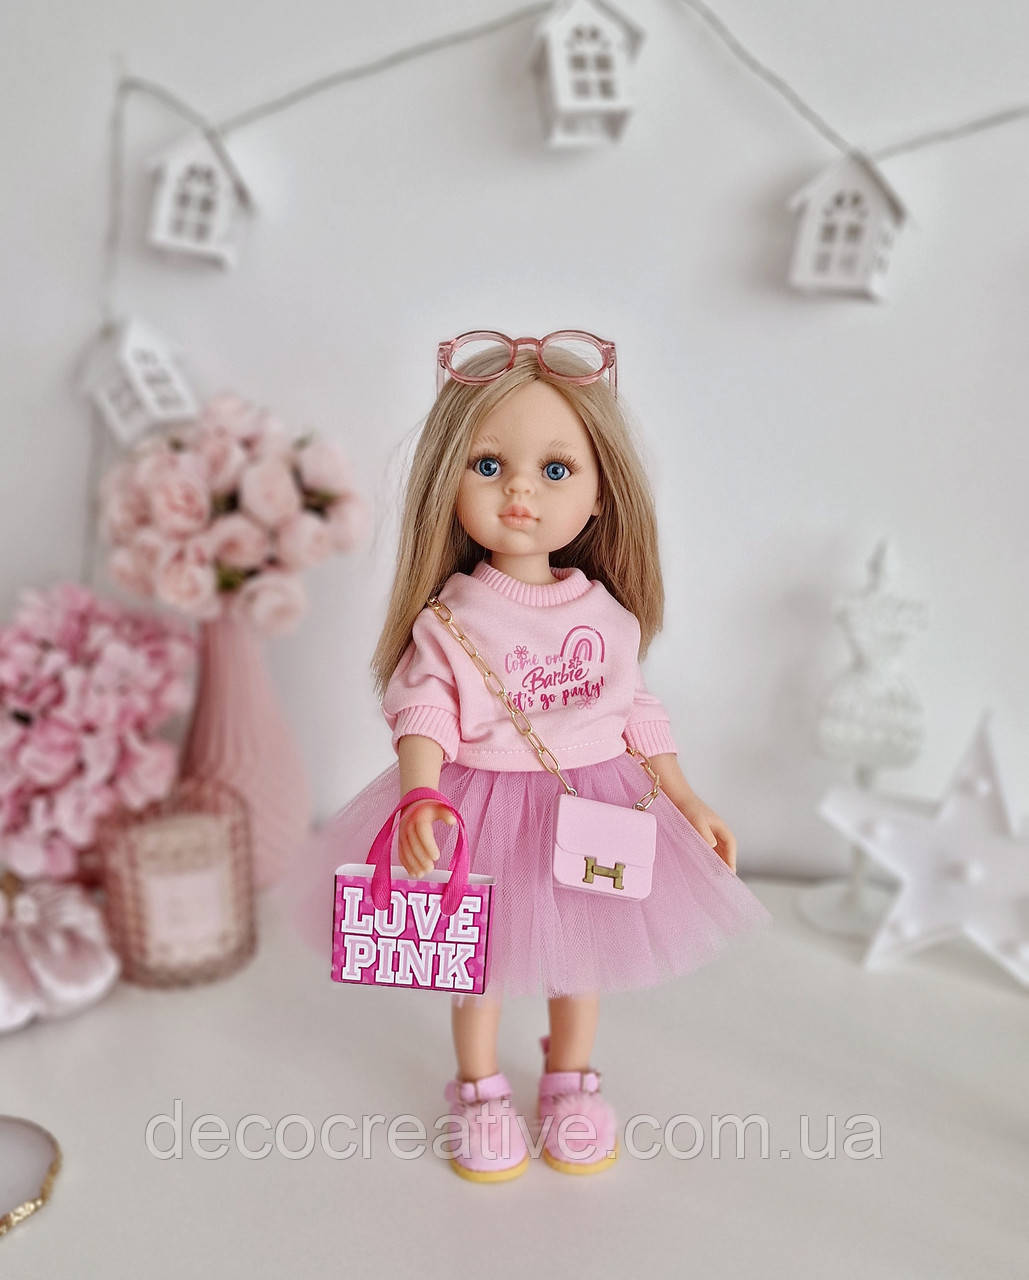 Лялька Паола рейна Карла Paola reina в стилі Barbie